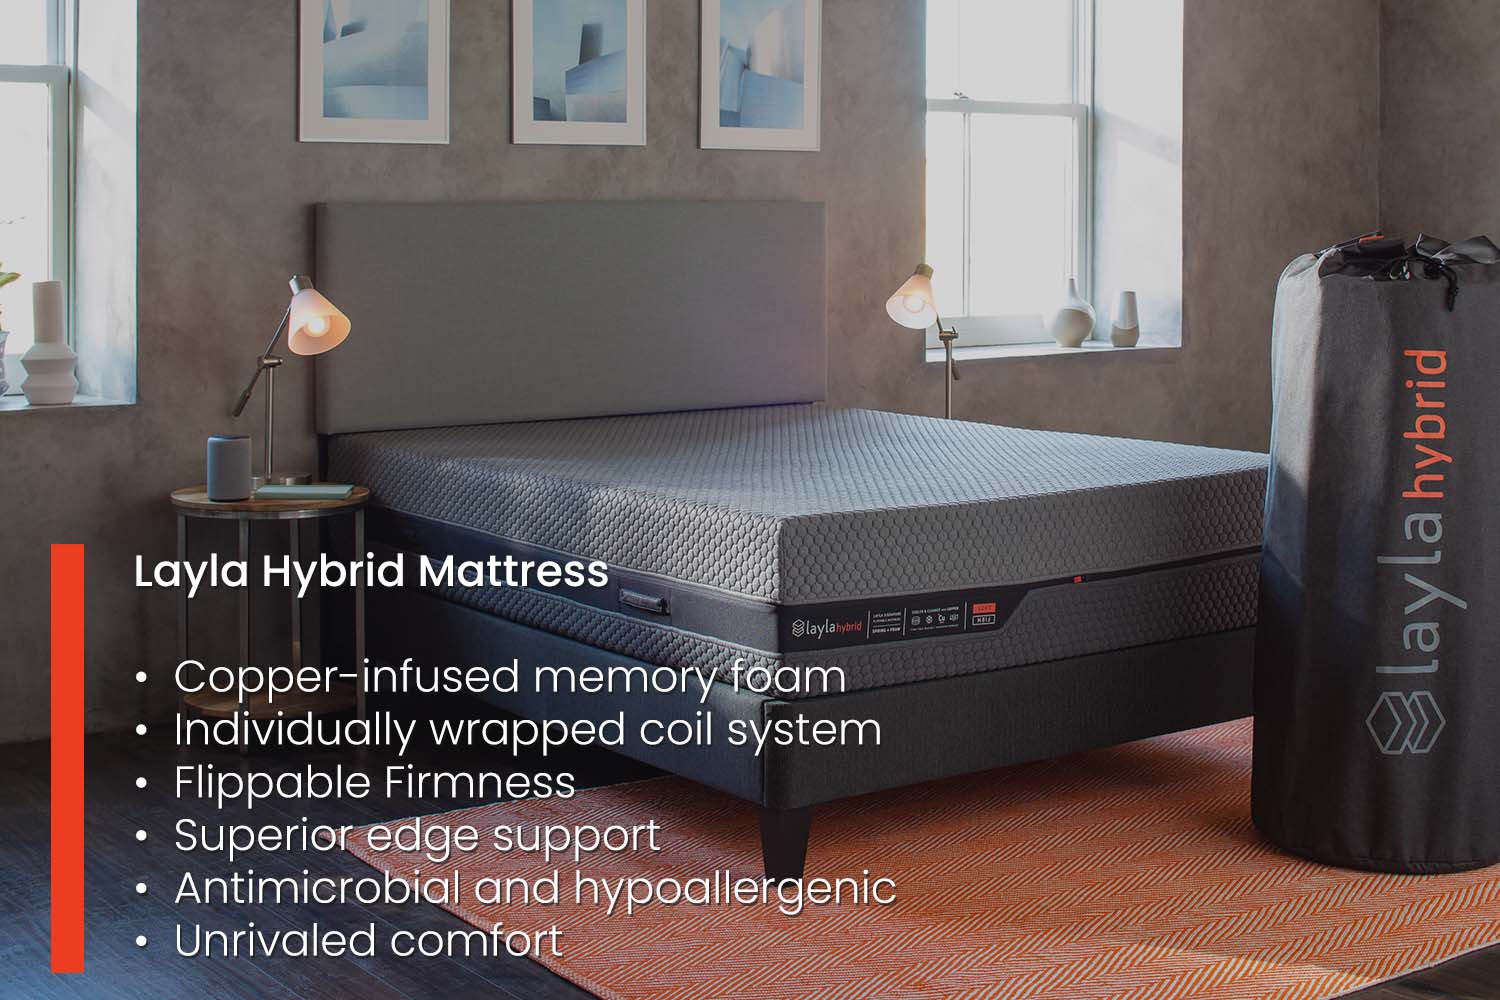 Layla hybrid mattress